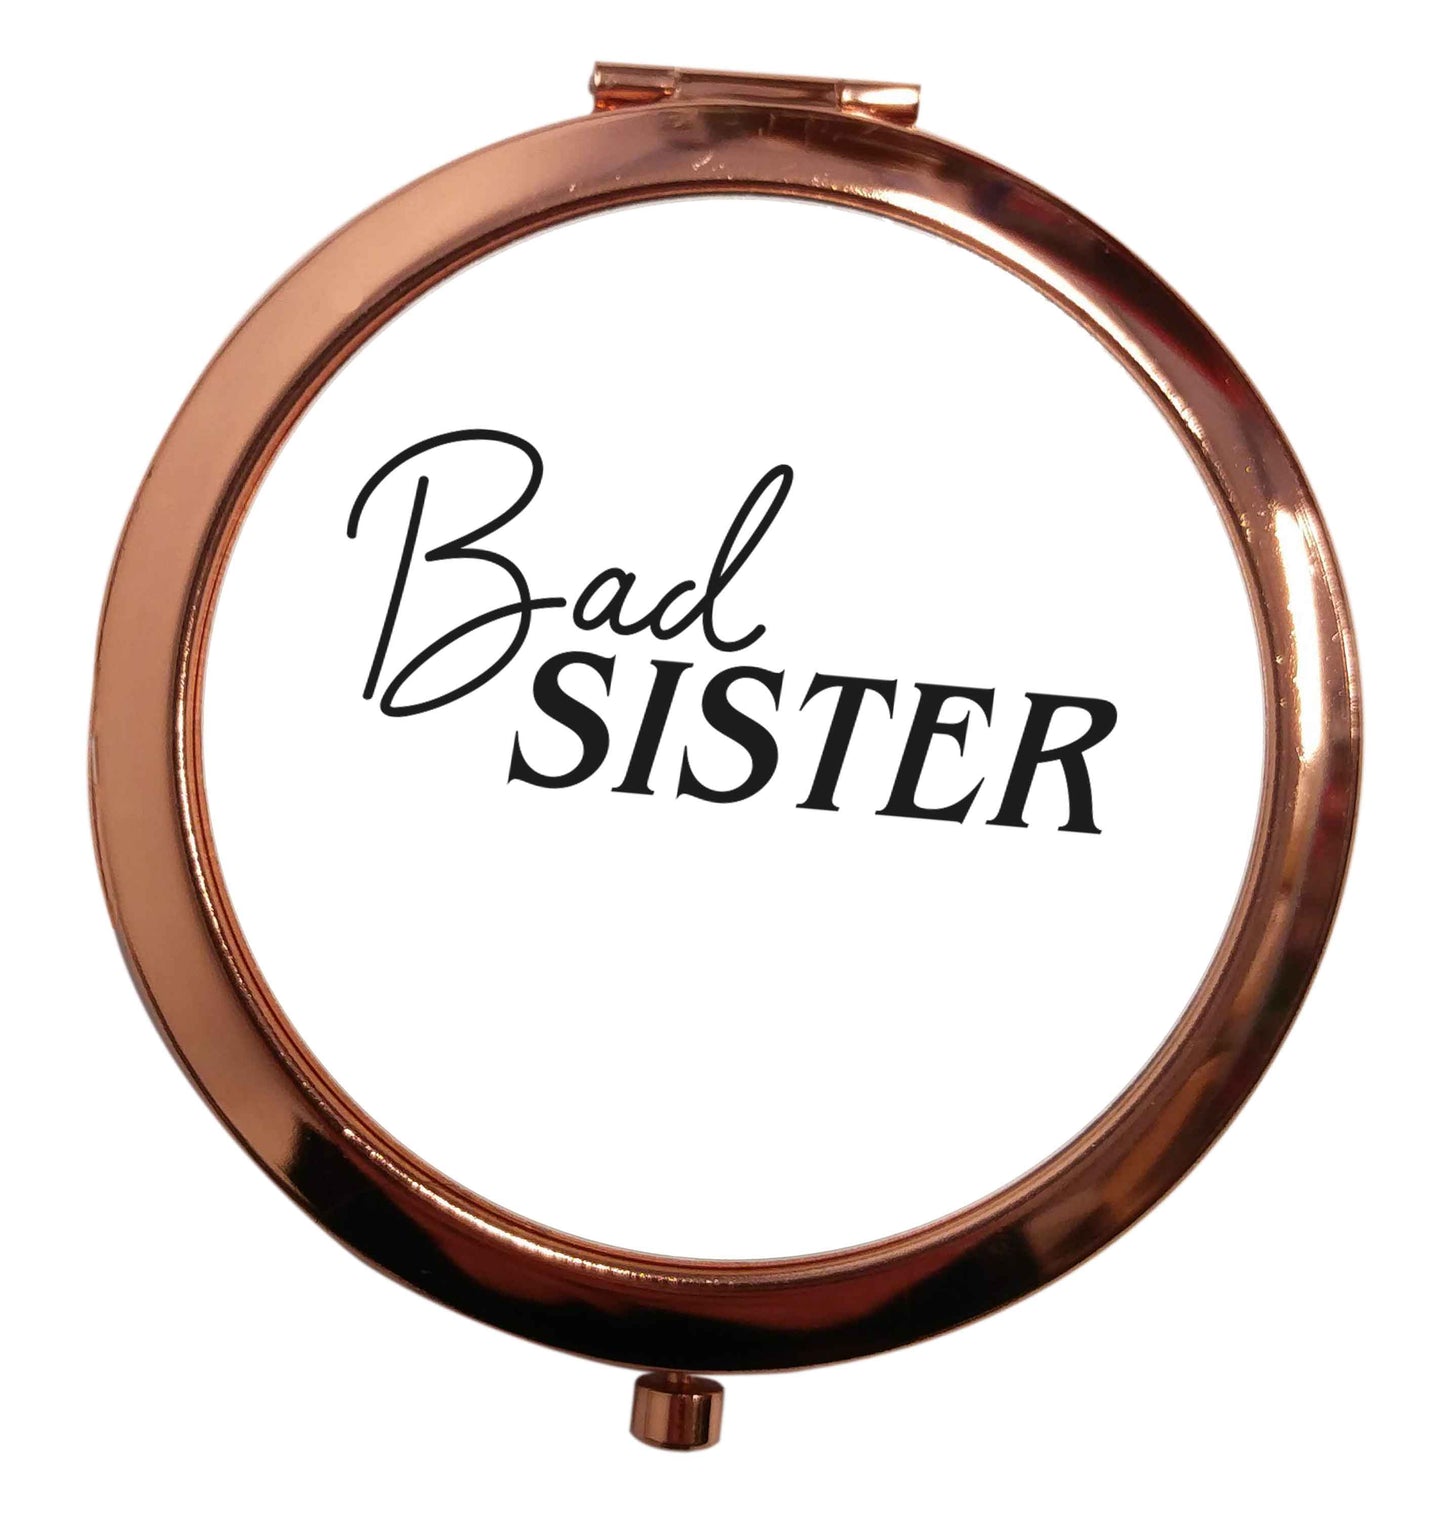 Bad sister rose gold circle pocket mirror